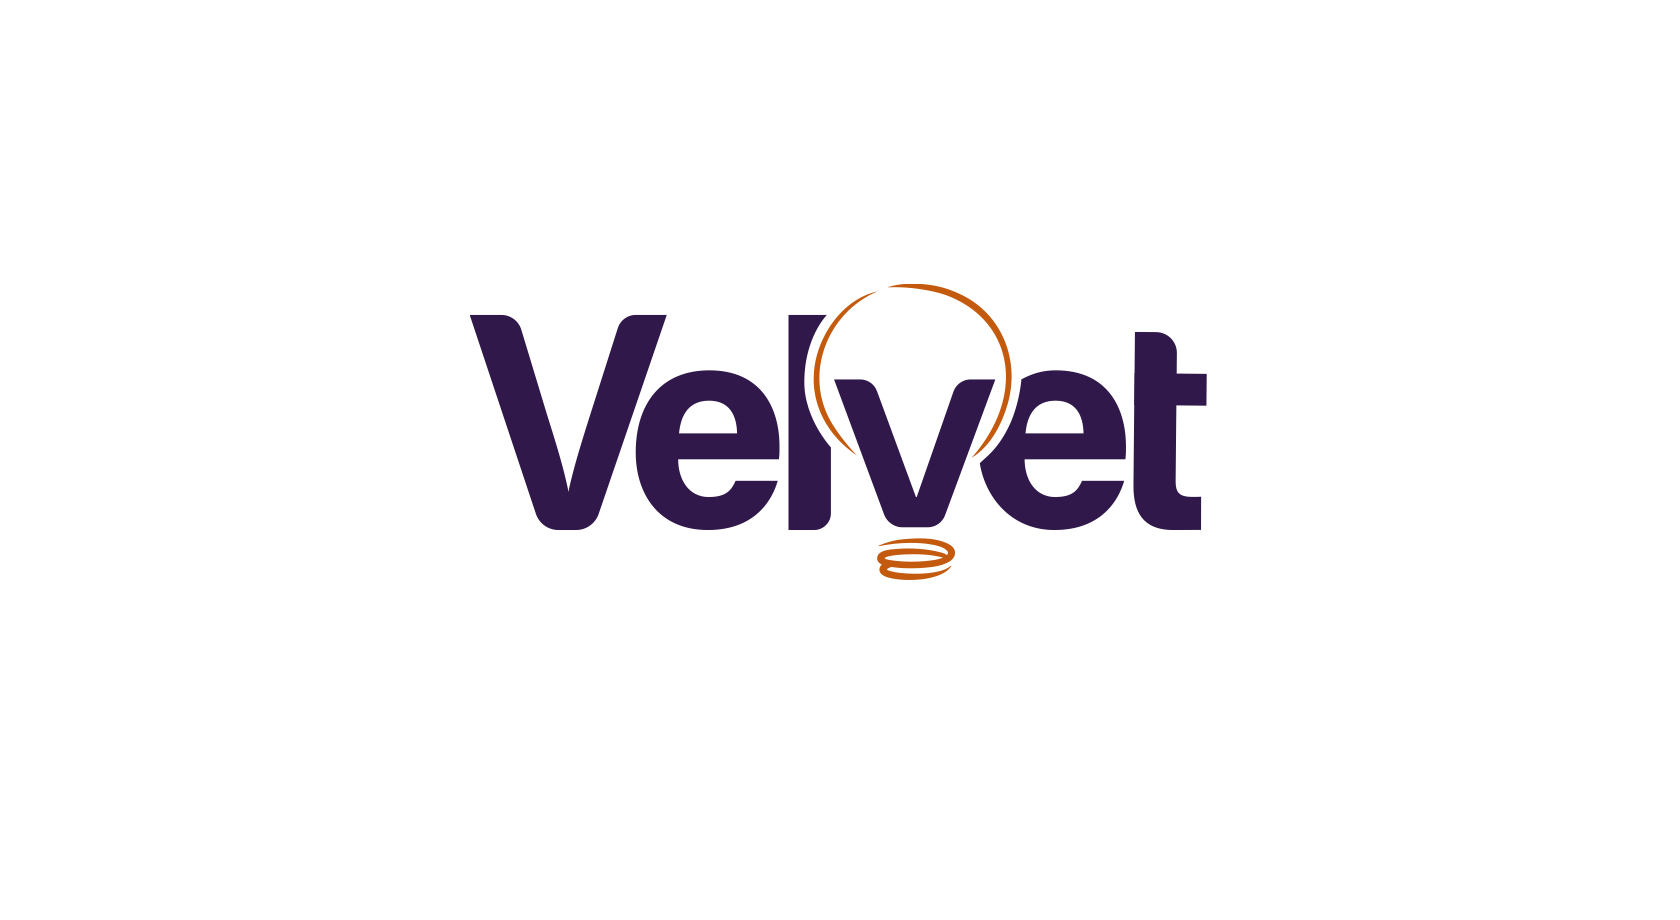 Velvet PR